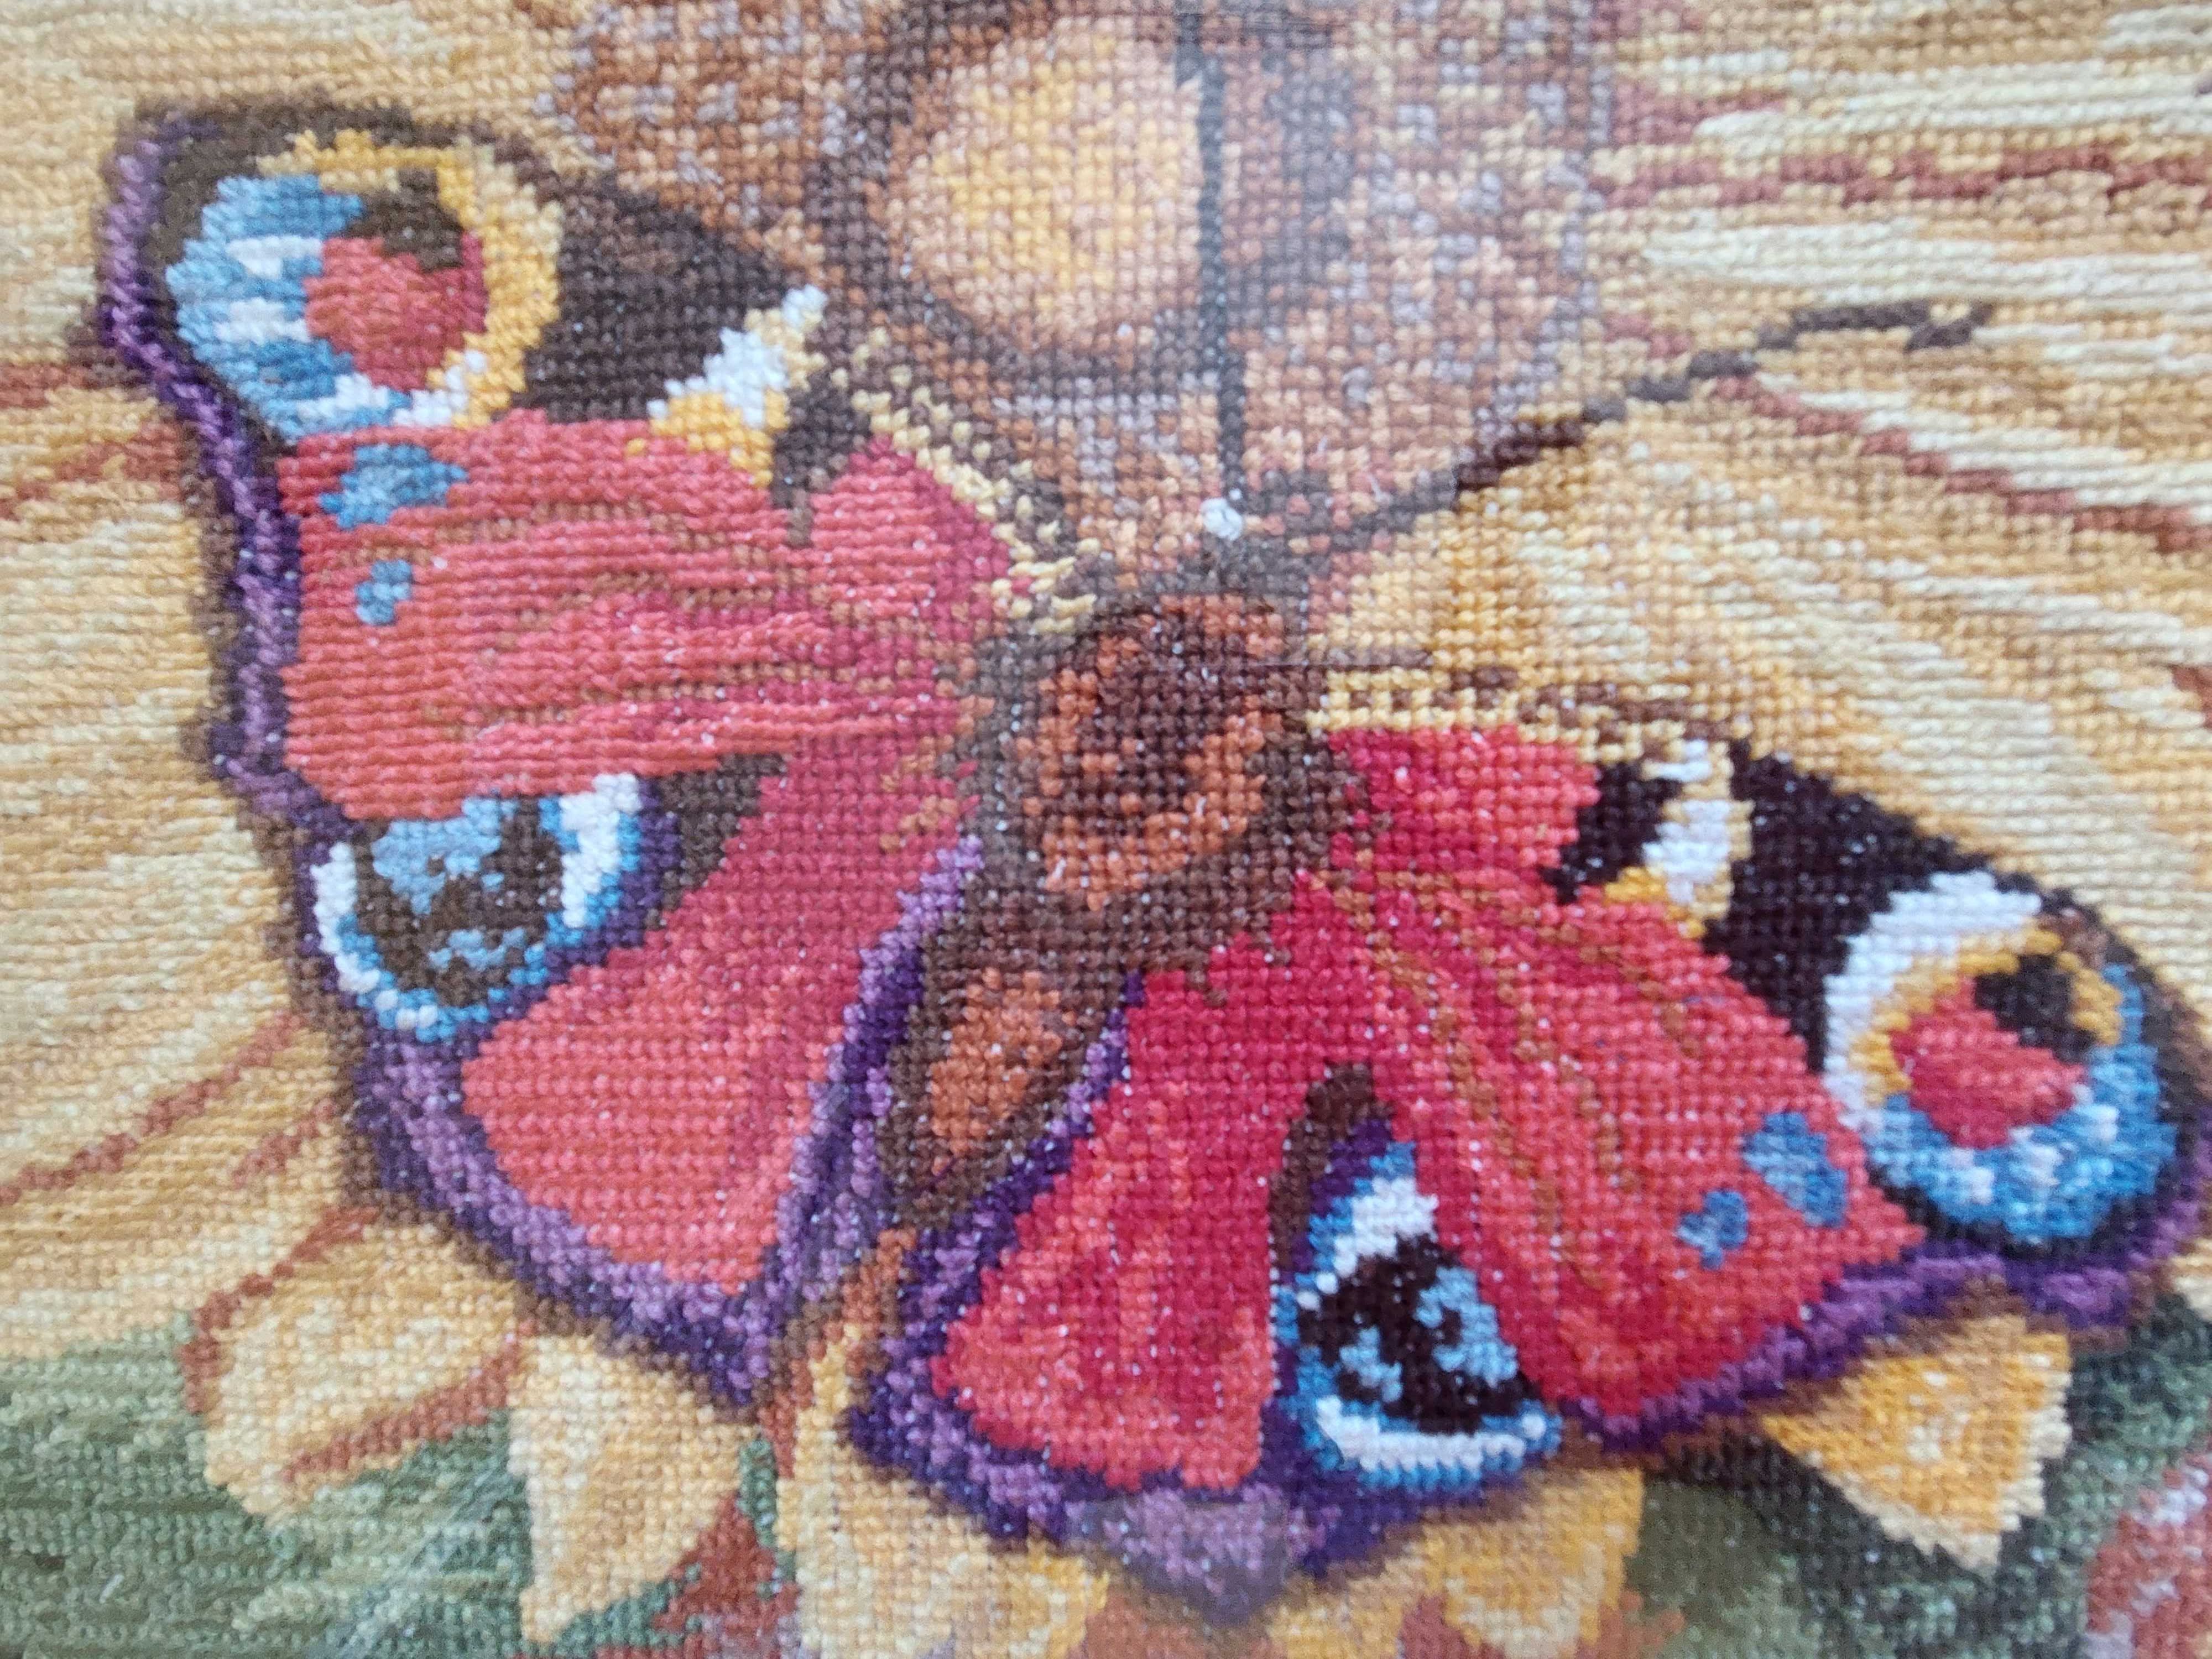 Obraz obrazek haft haft krzyżykowy wyszywany ręcznie motyl